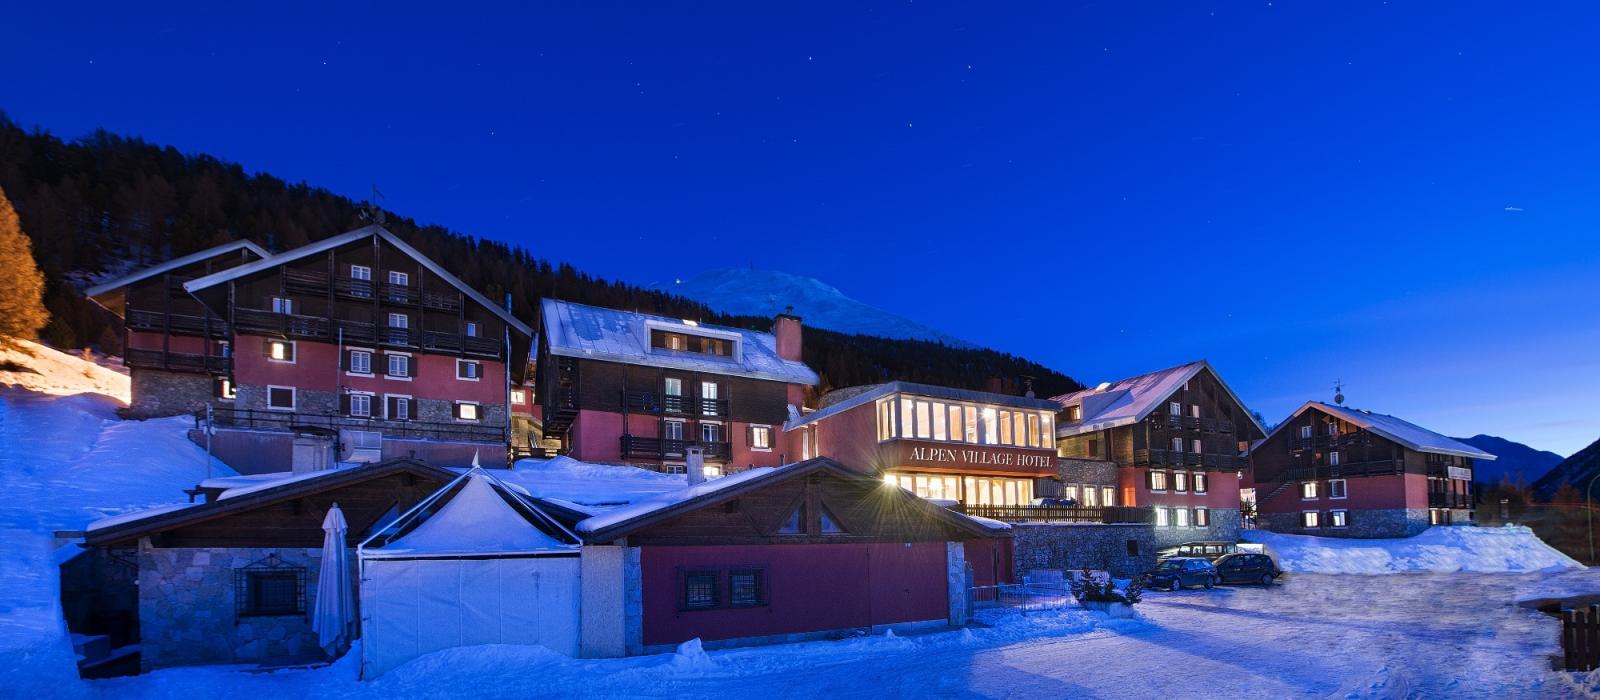 Hjælp Morgen Stramme Alpen Village Hotel i Livigno | Book online nu!